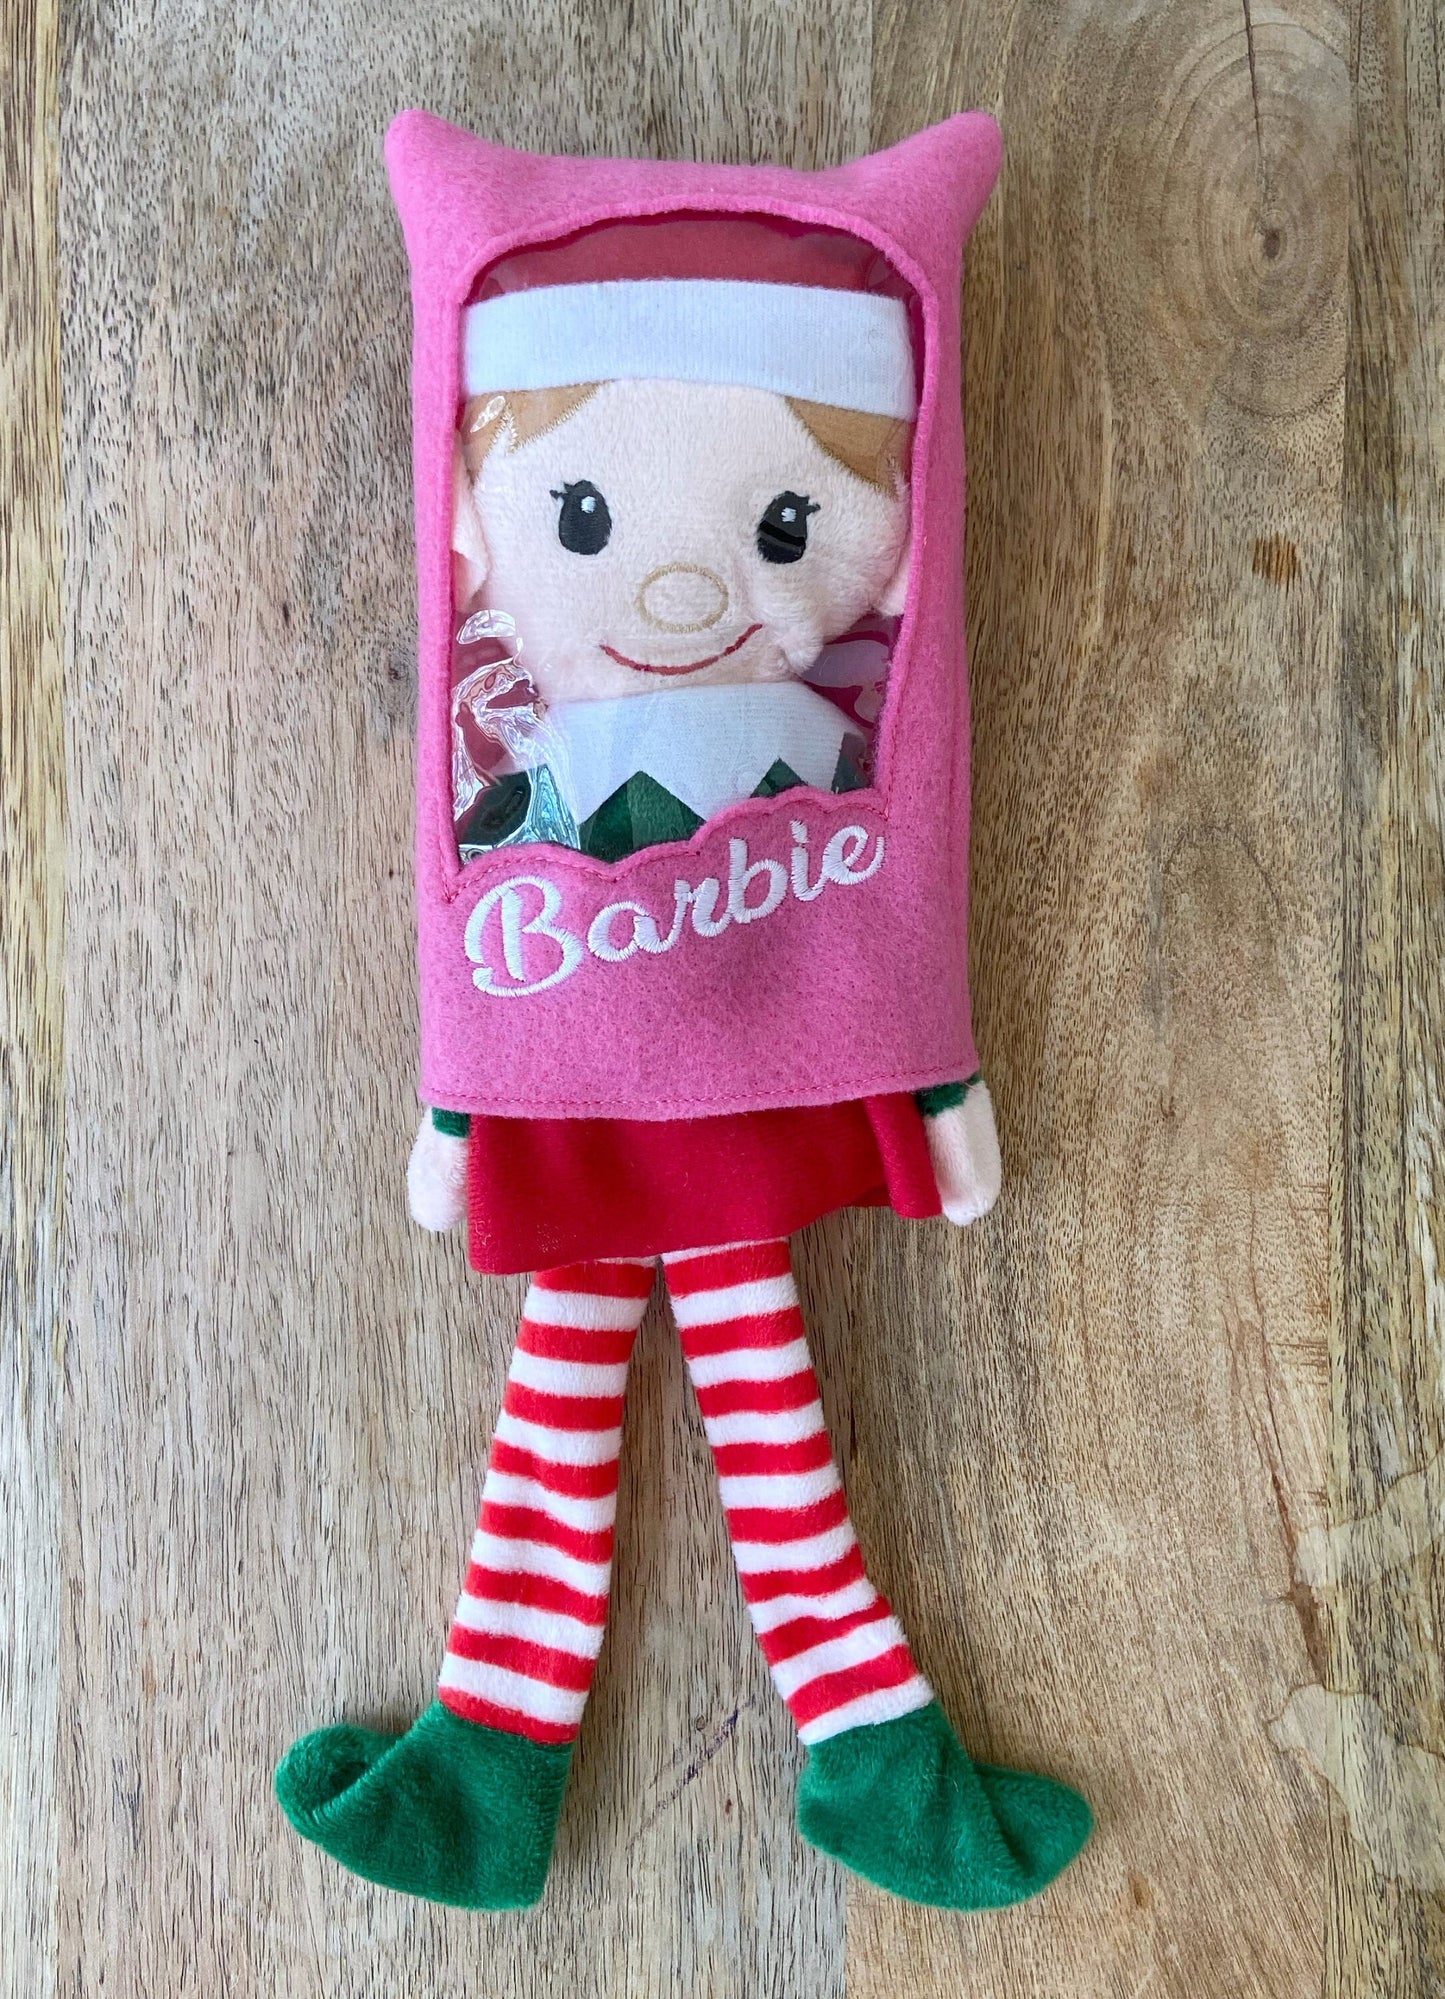 Barbie Box Elf Costume